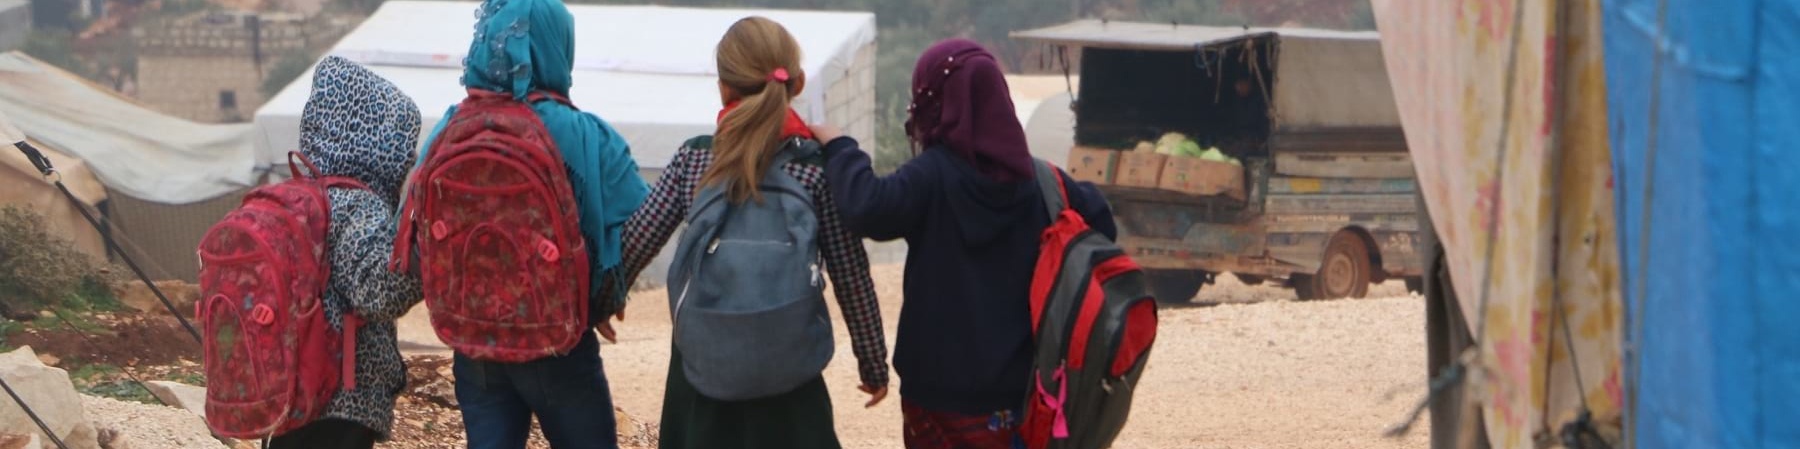 quattro bambini siriani camminano di spalle con gli zaini sulle spalle in un campo per sfollati